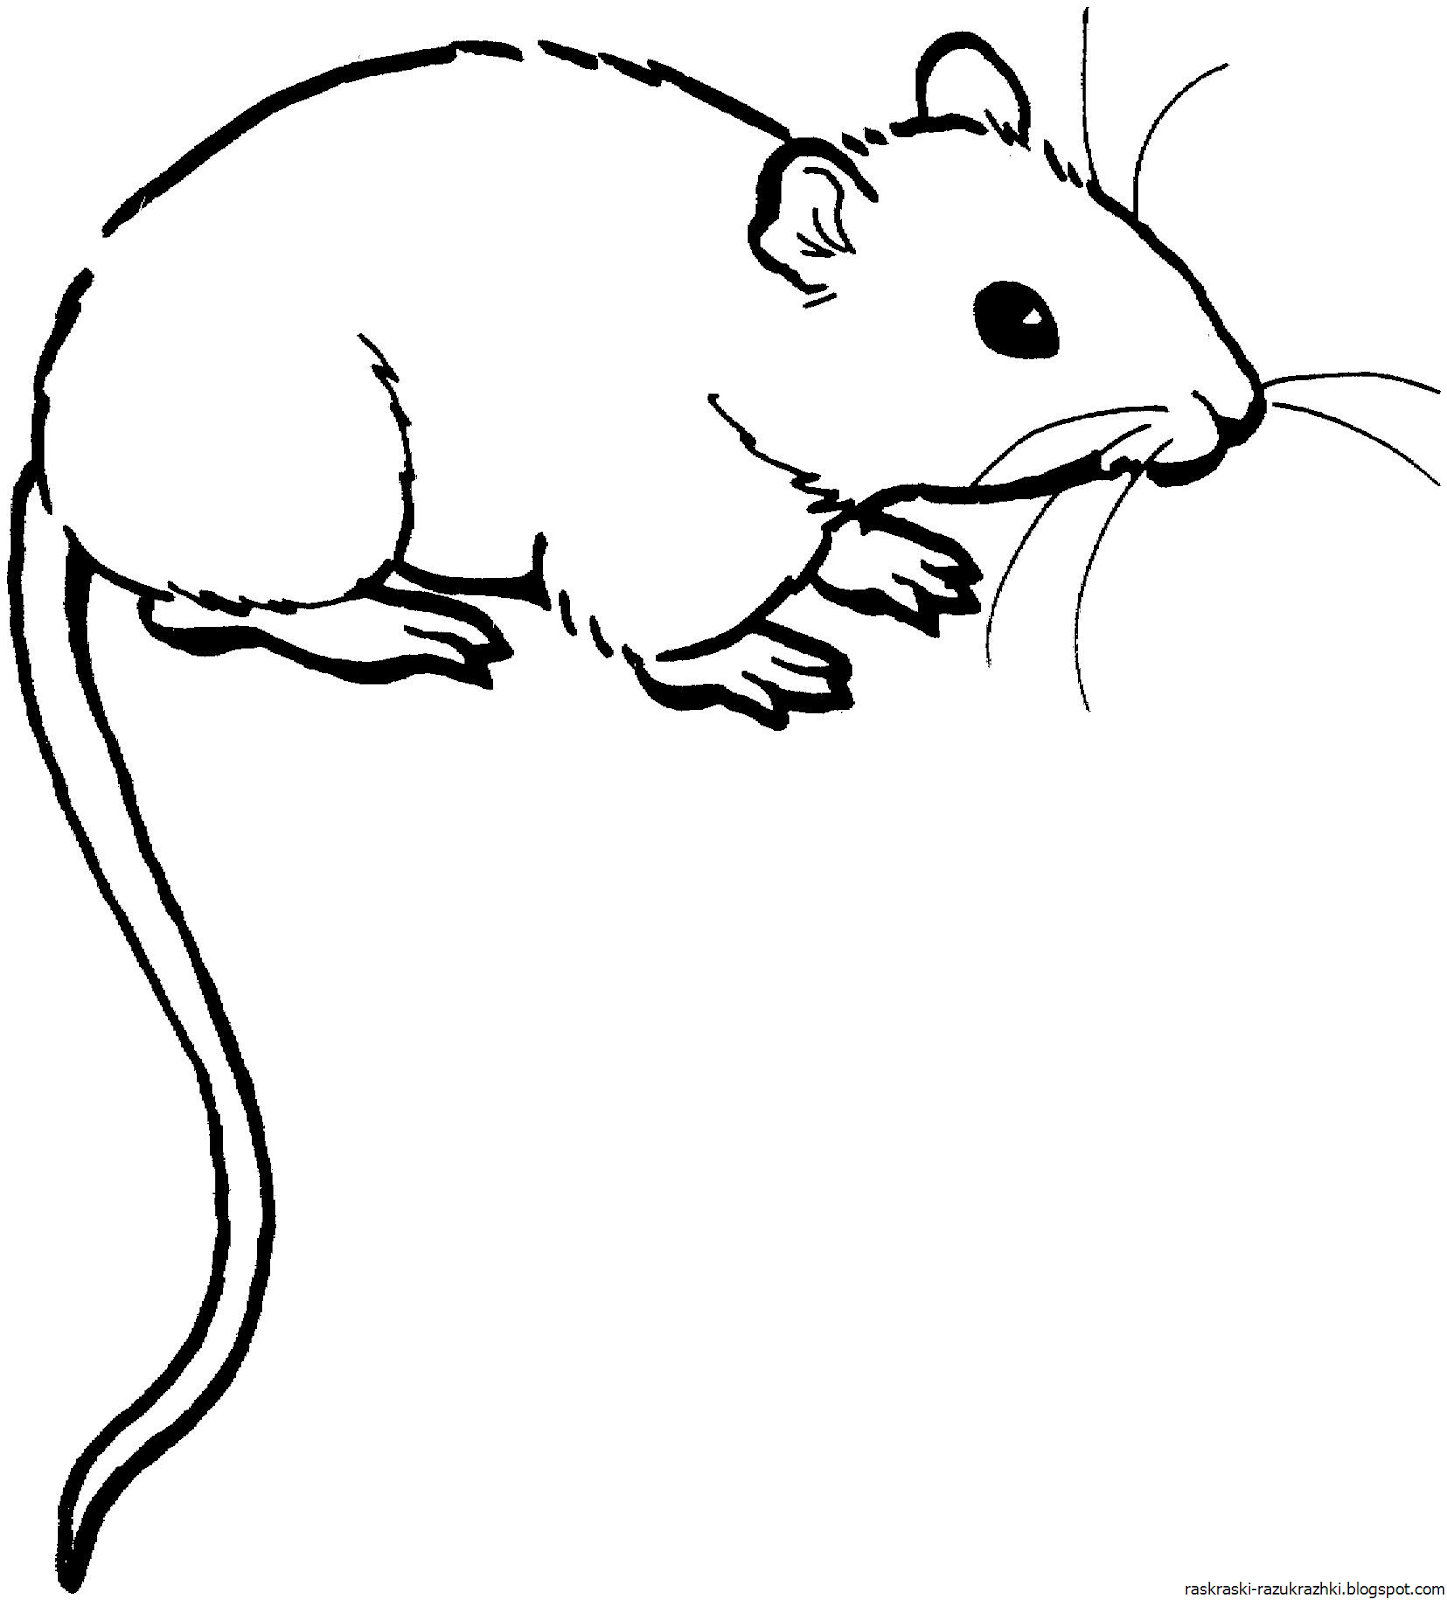 Раскраска мышь распечатать. Раскраска мышка. Мышь раскраска для детей. Мышка раскраска для детей. Мышка рисунок для детей.